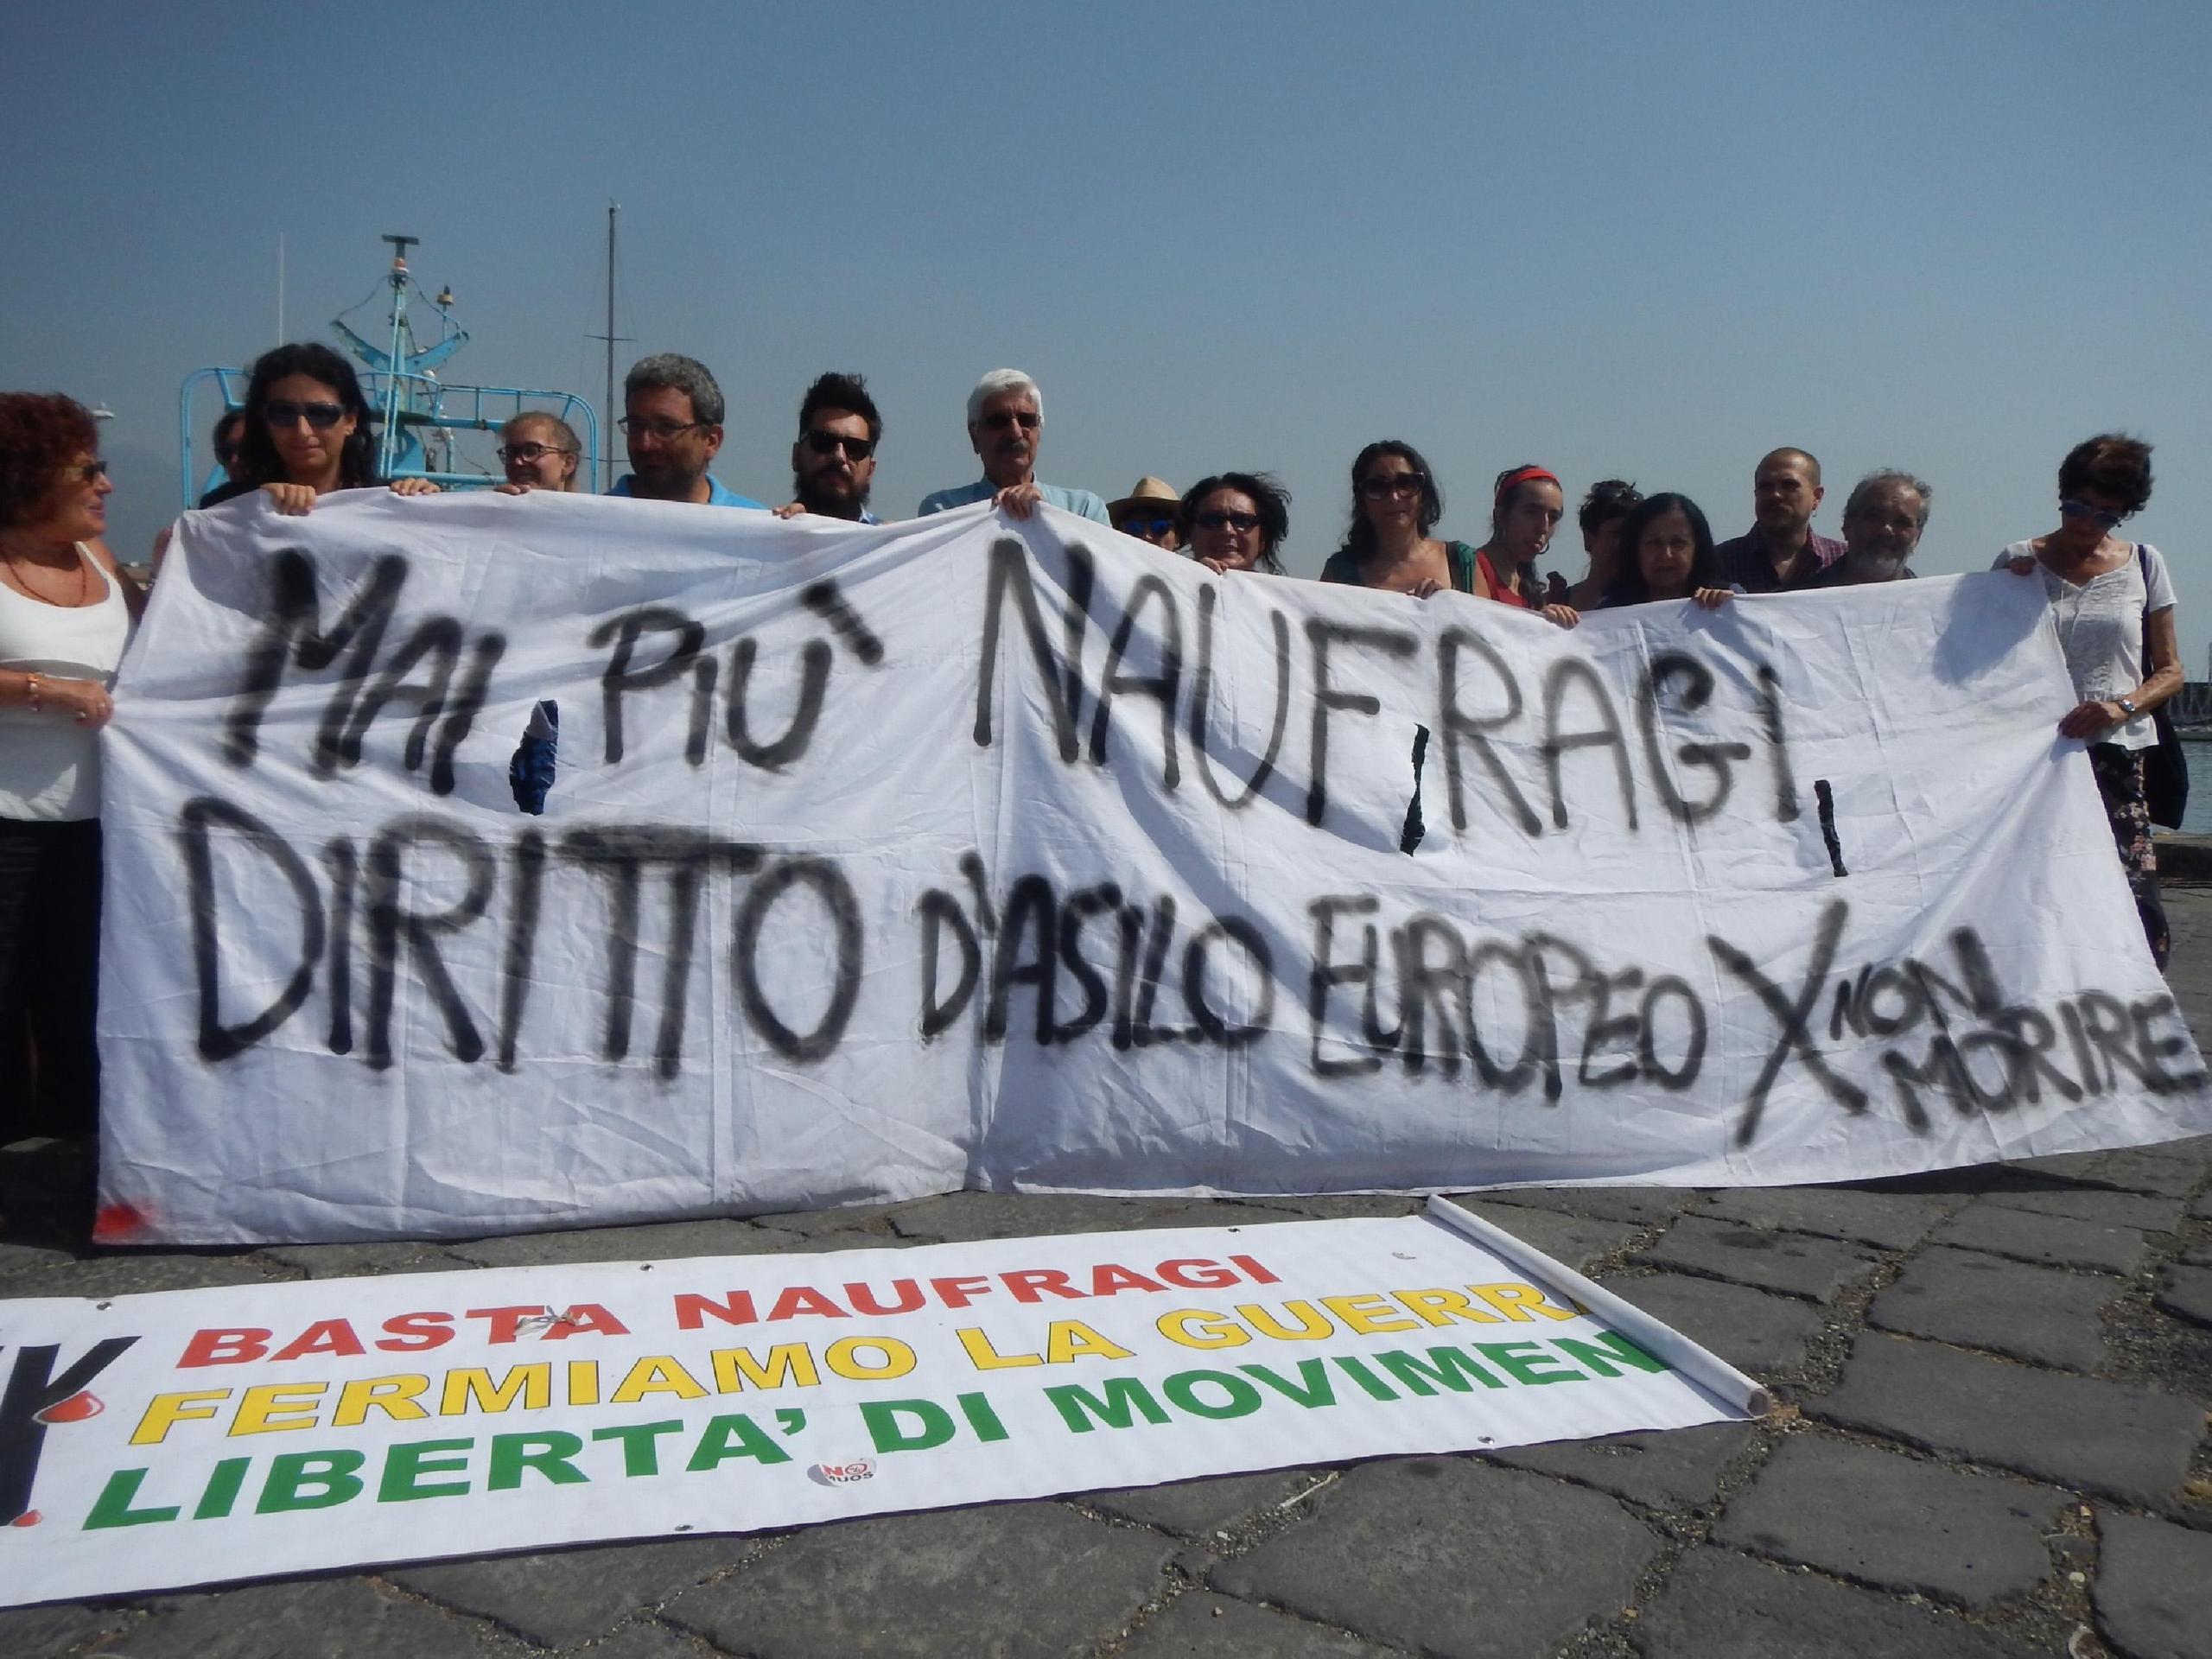 Un momento della manifestazione svoltasi nei giorni scorsi a Catania organizzata dal movimento Generazione identitaria